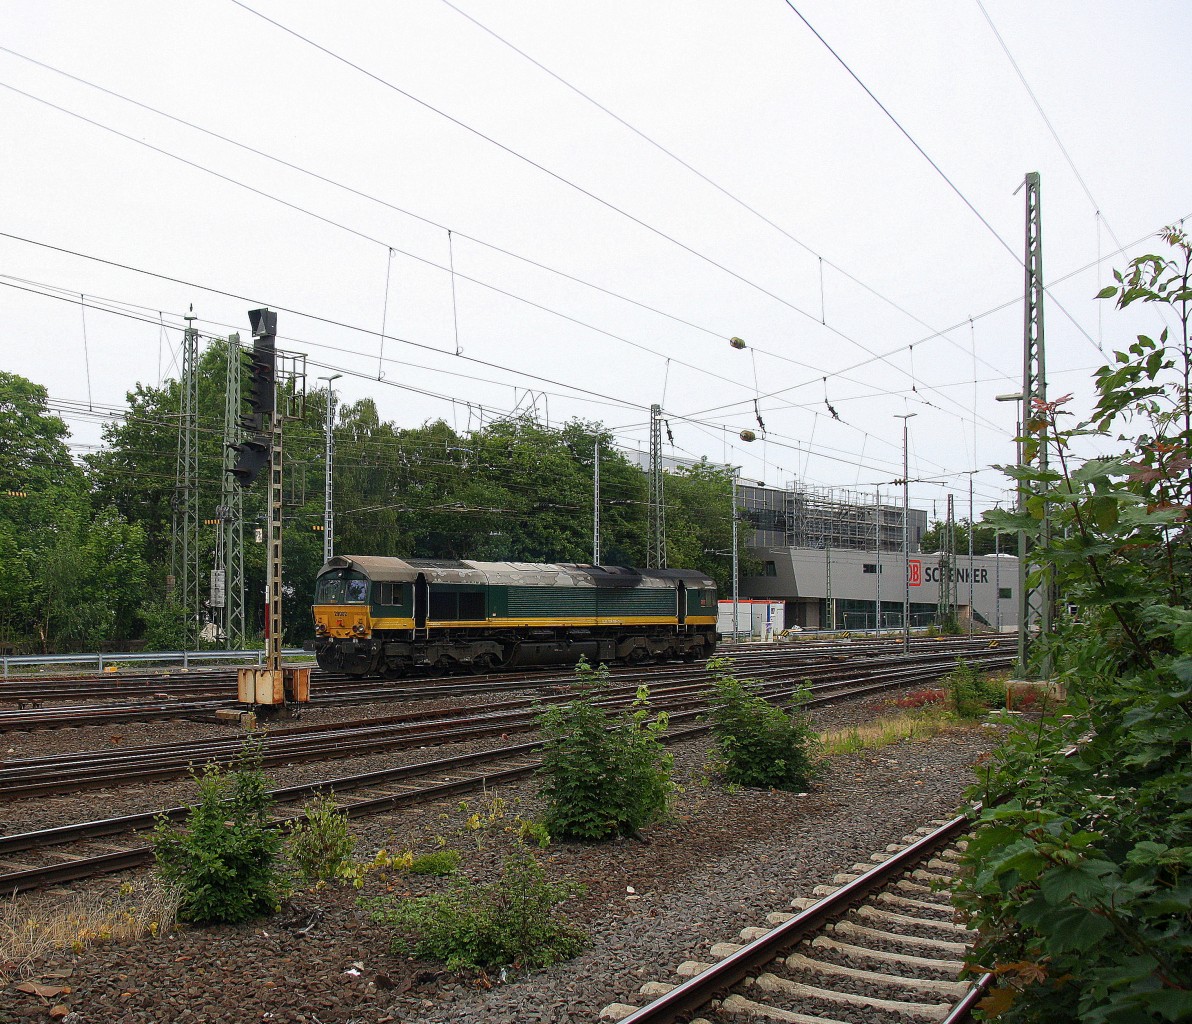 Ein Nachschuss von der Class 66 29002 von Crossrail rangiert in Aachen-West.
Aufgenommen vom Bahnsteig in Aachen-West. 
Bei Sonne und Wolken am Nachmittag vom 26.6.2015.